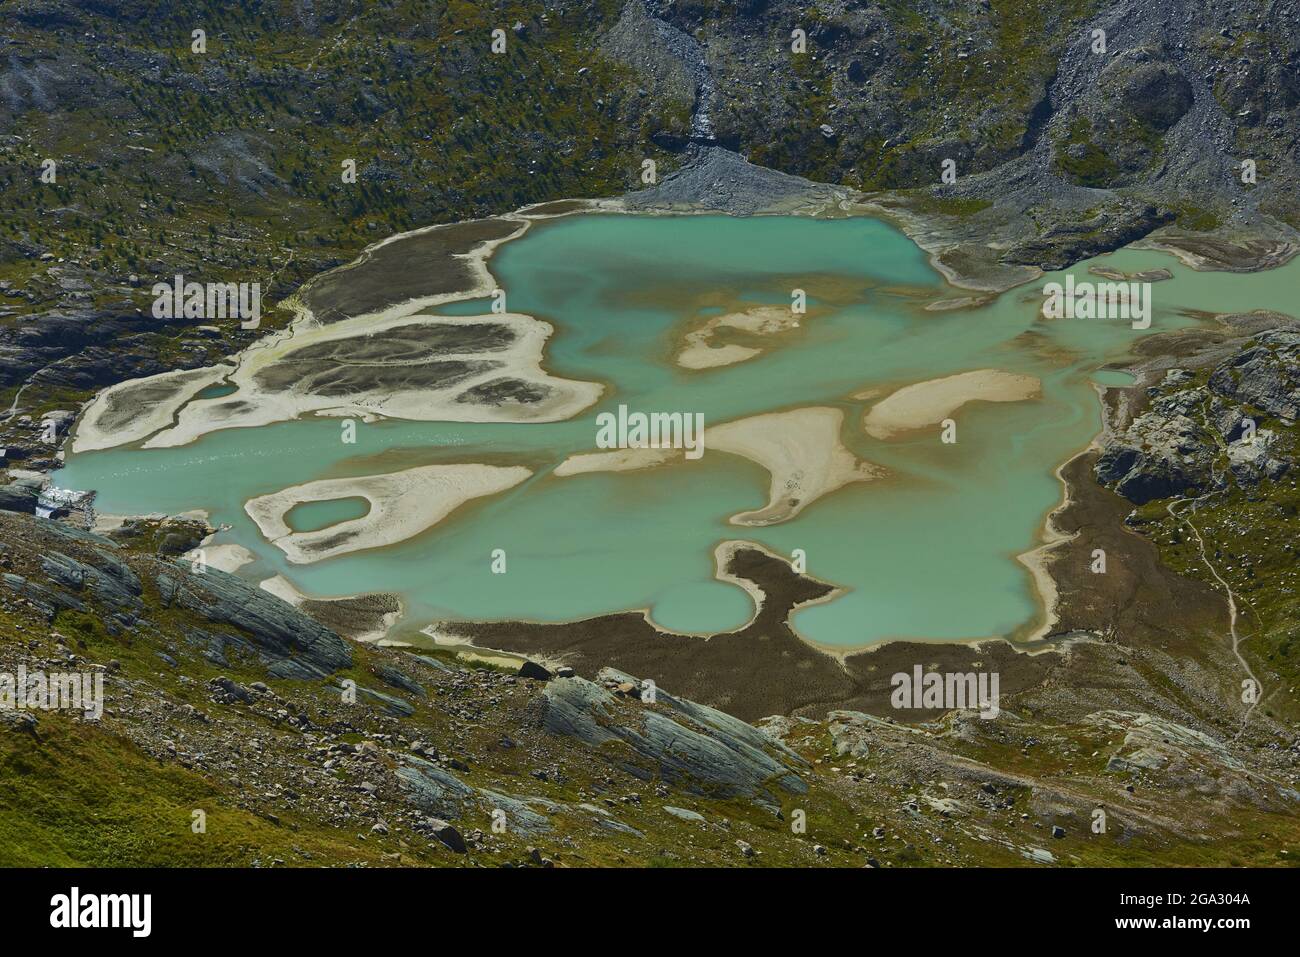 Lago di Ghiacciaio Pasterze da Gamsgrubenweg con le sue acque turchesi, fangose e la massa glaciale circostante, Franz-Joseph-Höhe al mattino presto Foto Stock